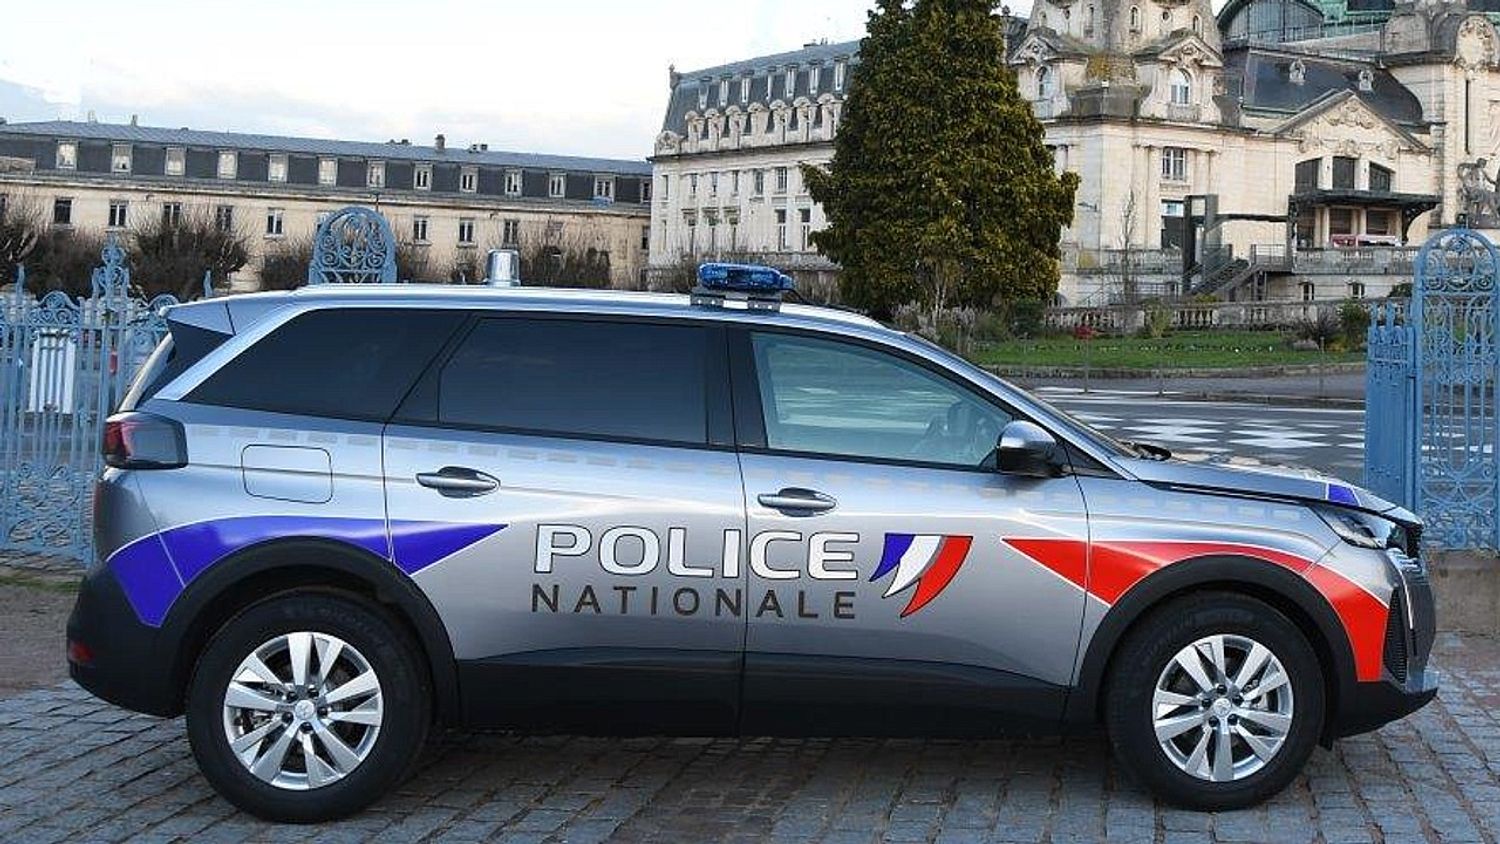 La police recherche un octogénaire disparu au nord de Limoges